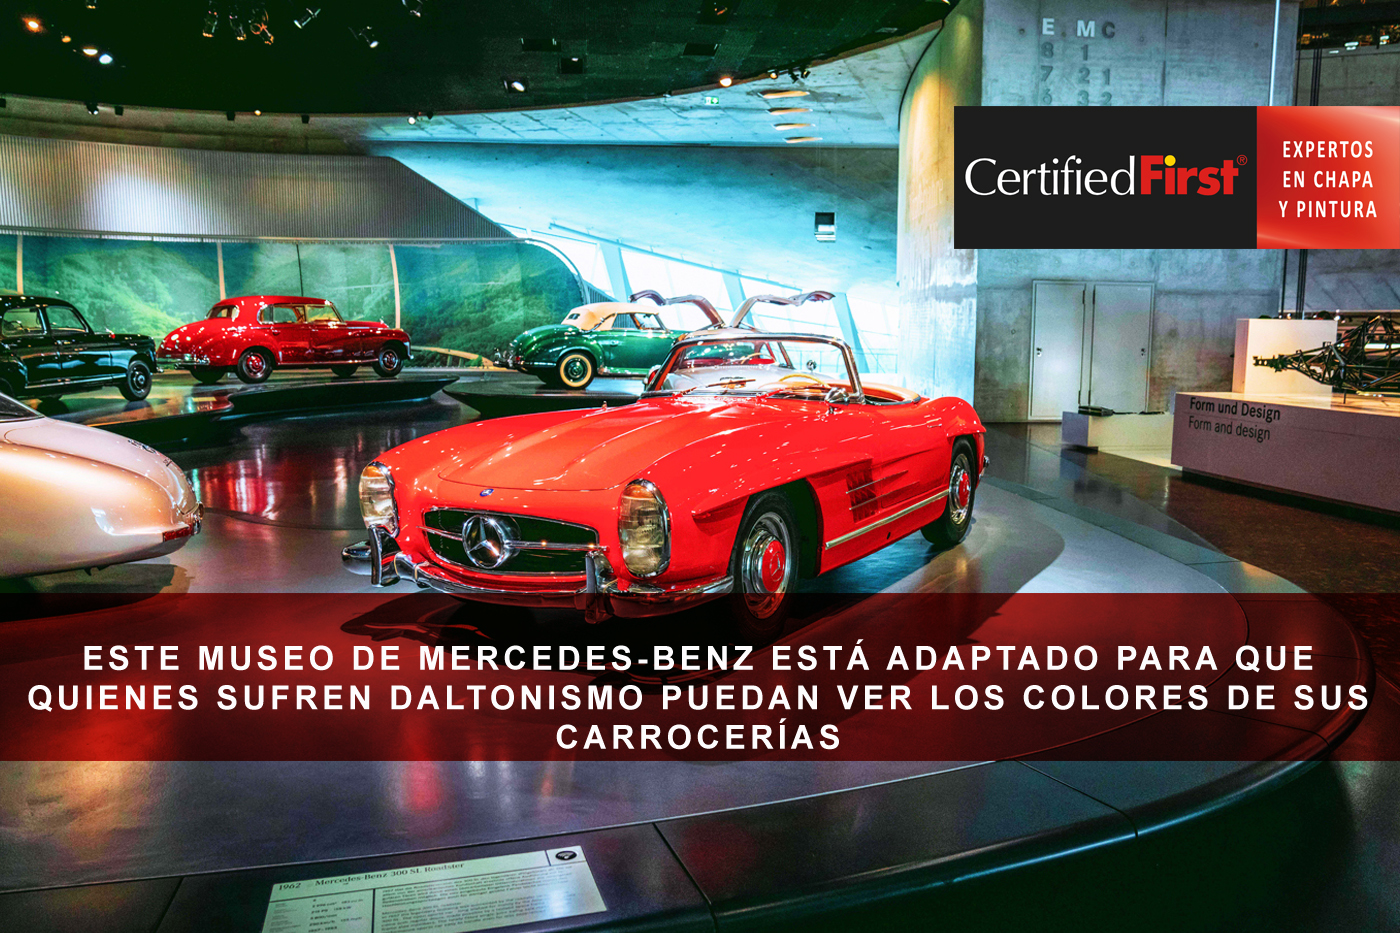 Este museo de Mercedes-Benz está adaptado para que quienes sufren daltonismo puedan ver los colores de sus carrocerías